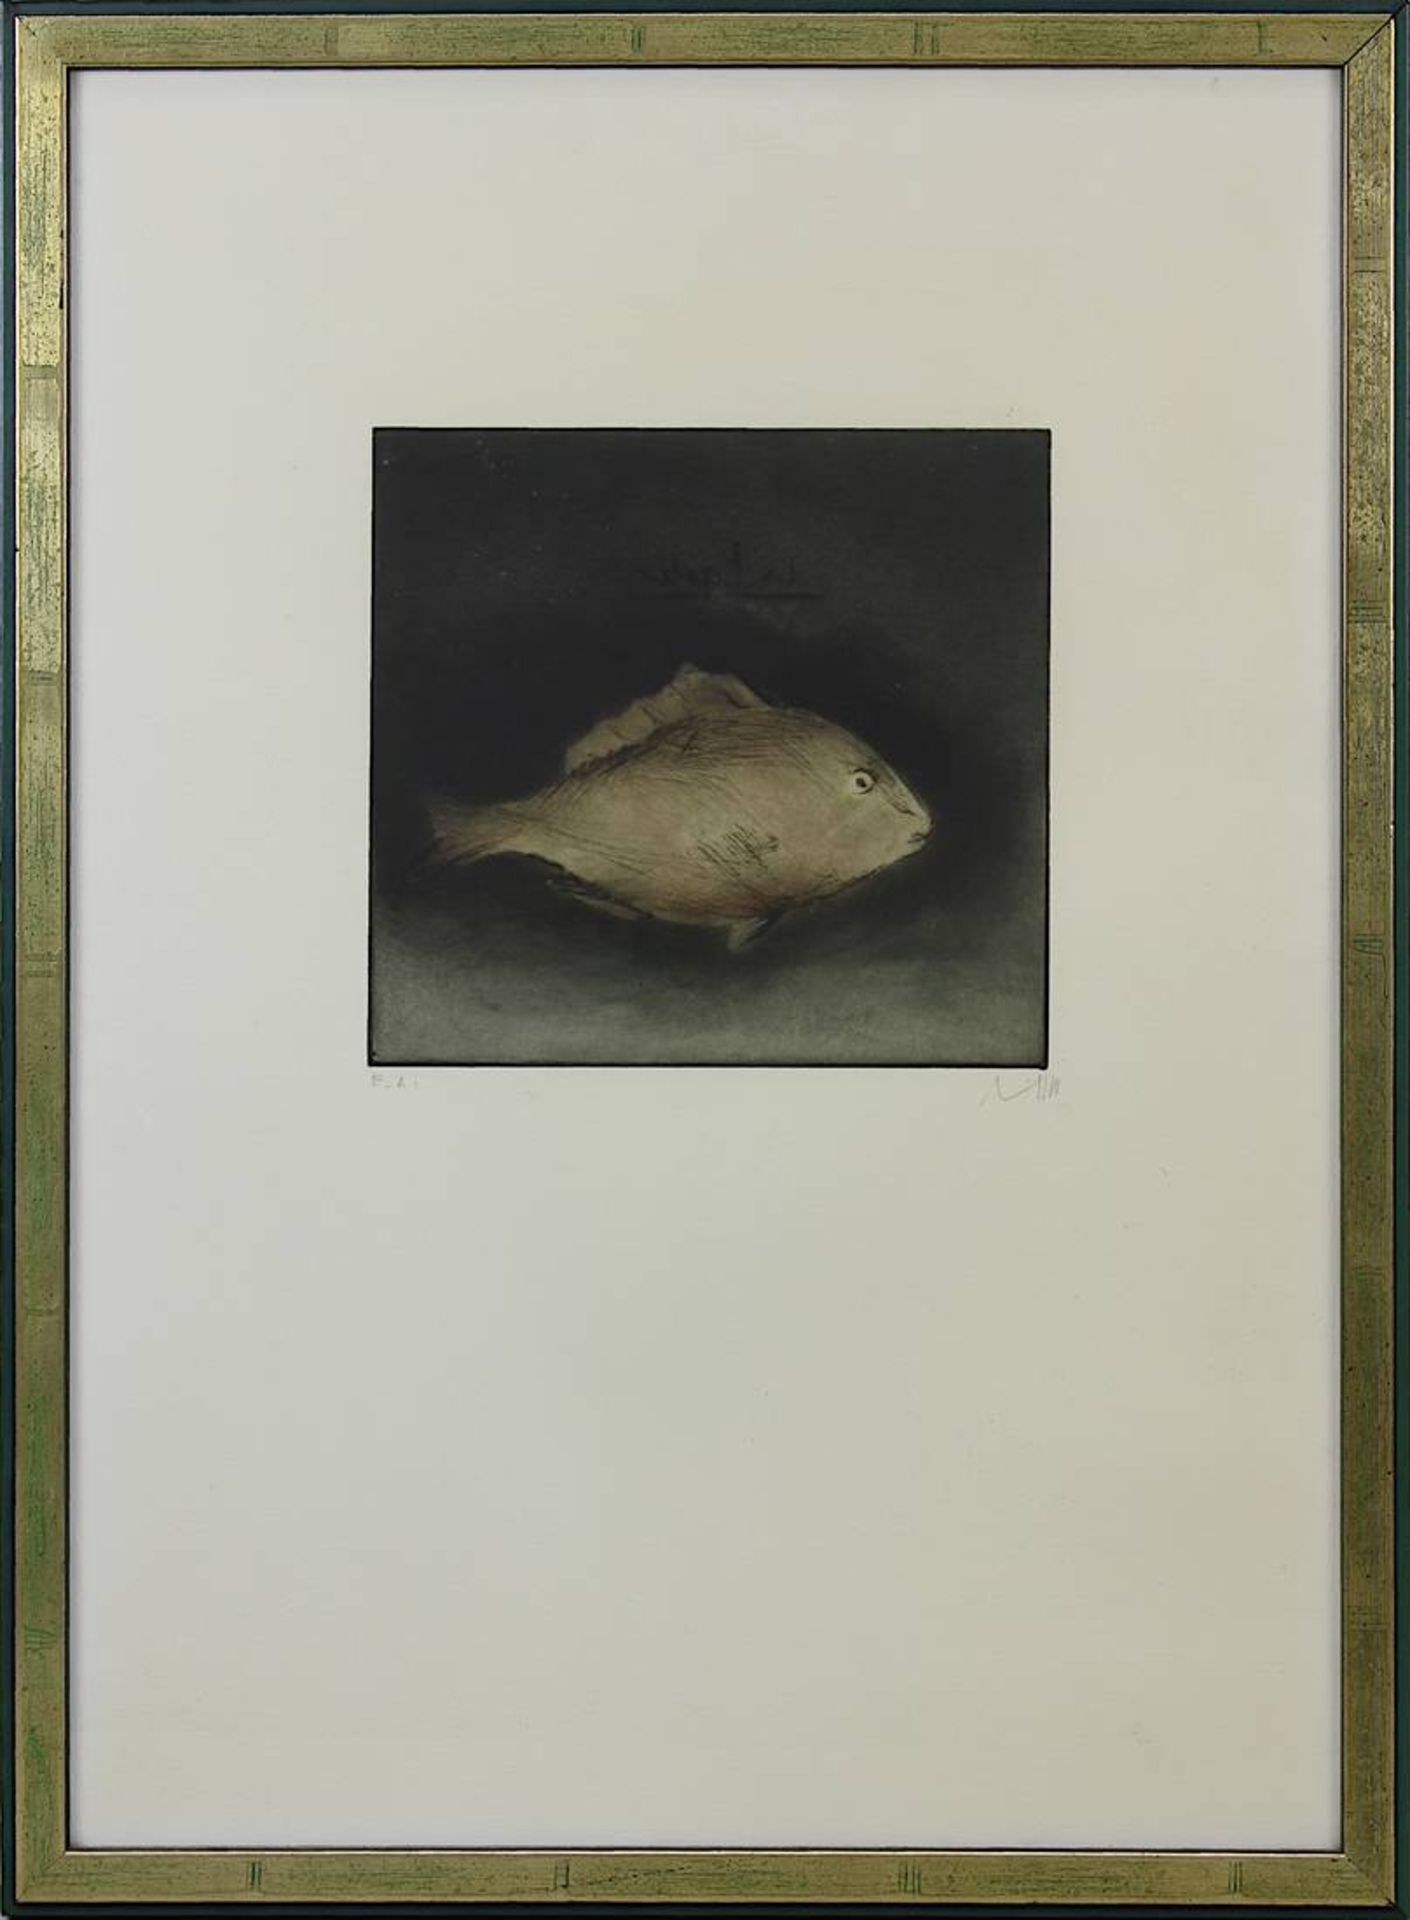 Lichtner-Aix, Werner (Berlin 1939 - 1987 München) Zwei Farbradierungen: Fisch, 18,5 x 20 cm, am - Bild 2 aus 5